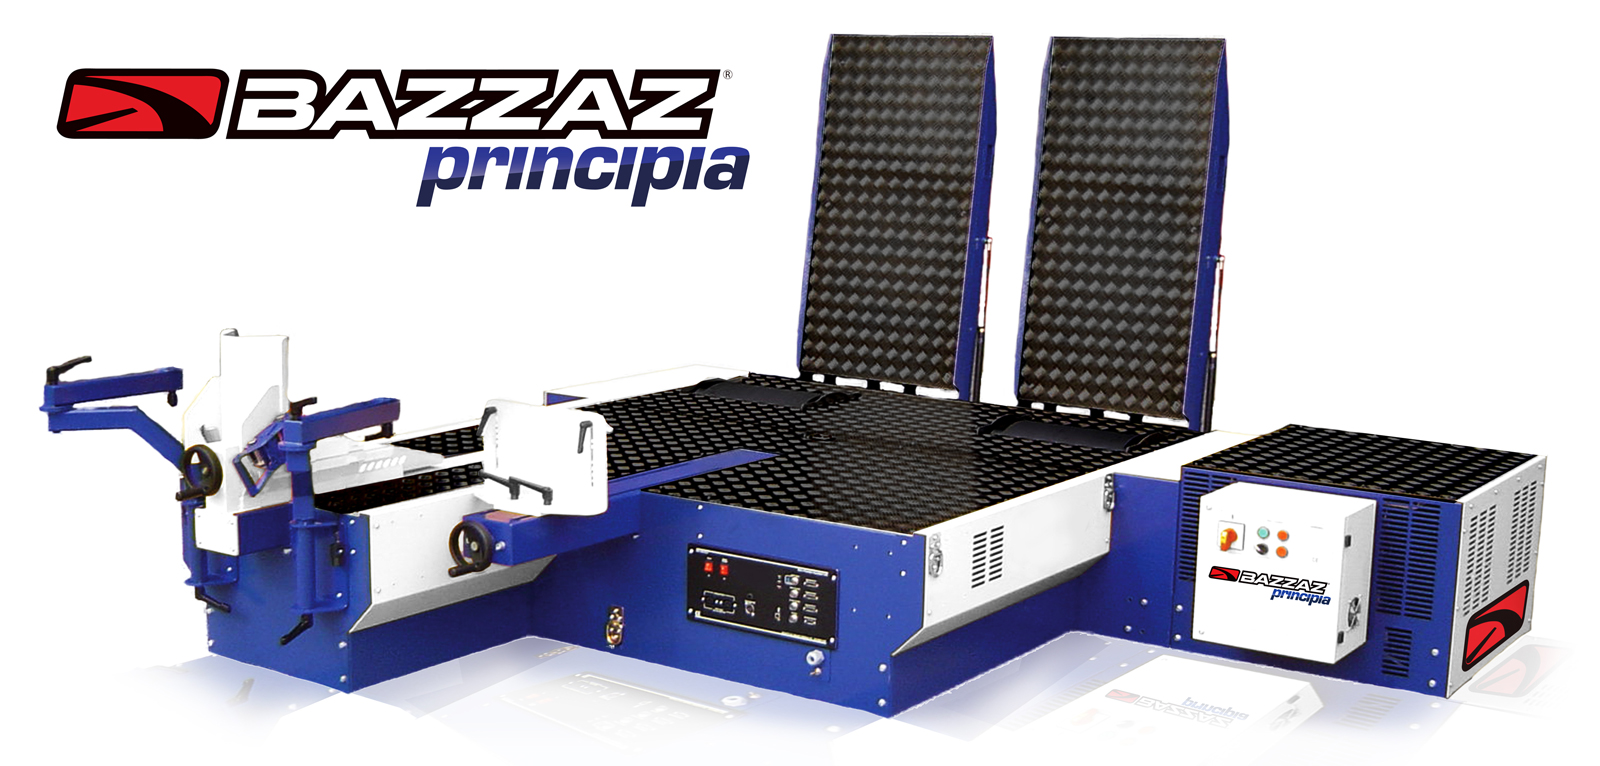 BAZZAZ Announces Release of Principia Line of Dynamometers - Hot Bike Magazine